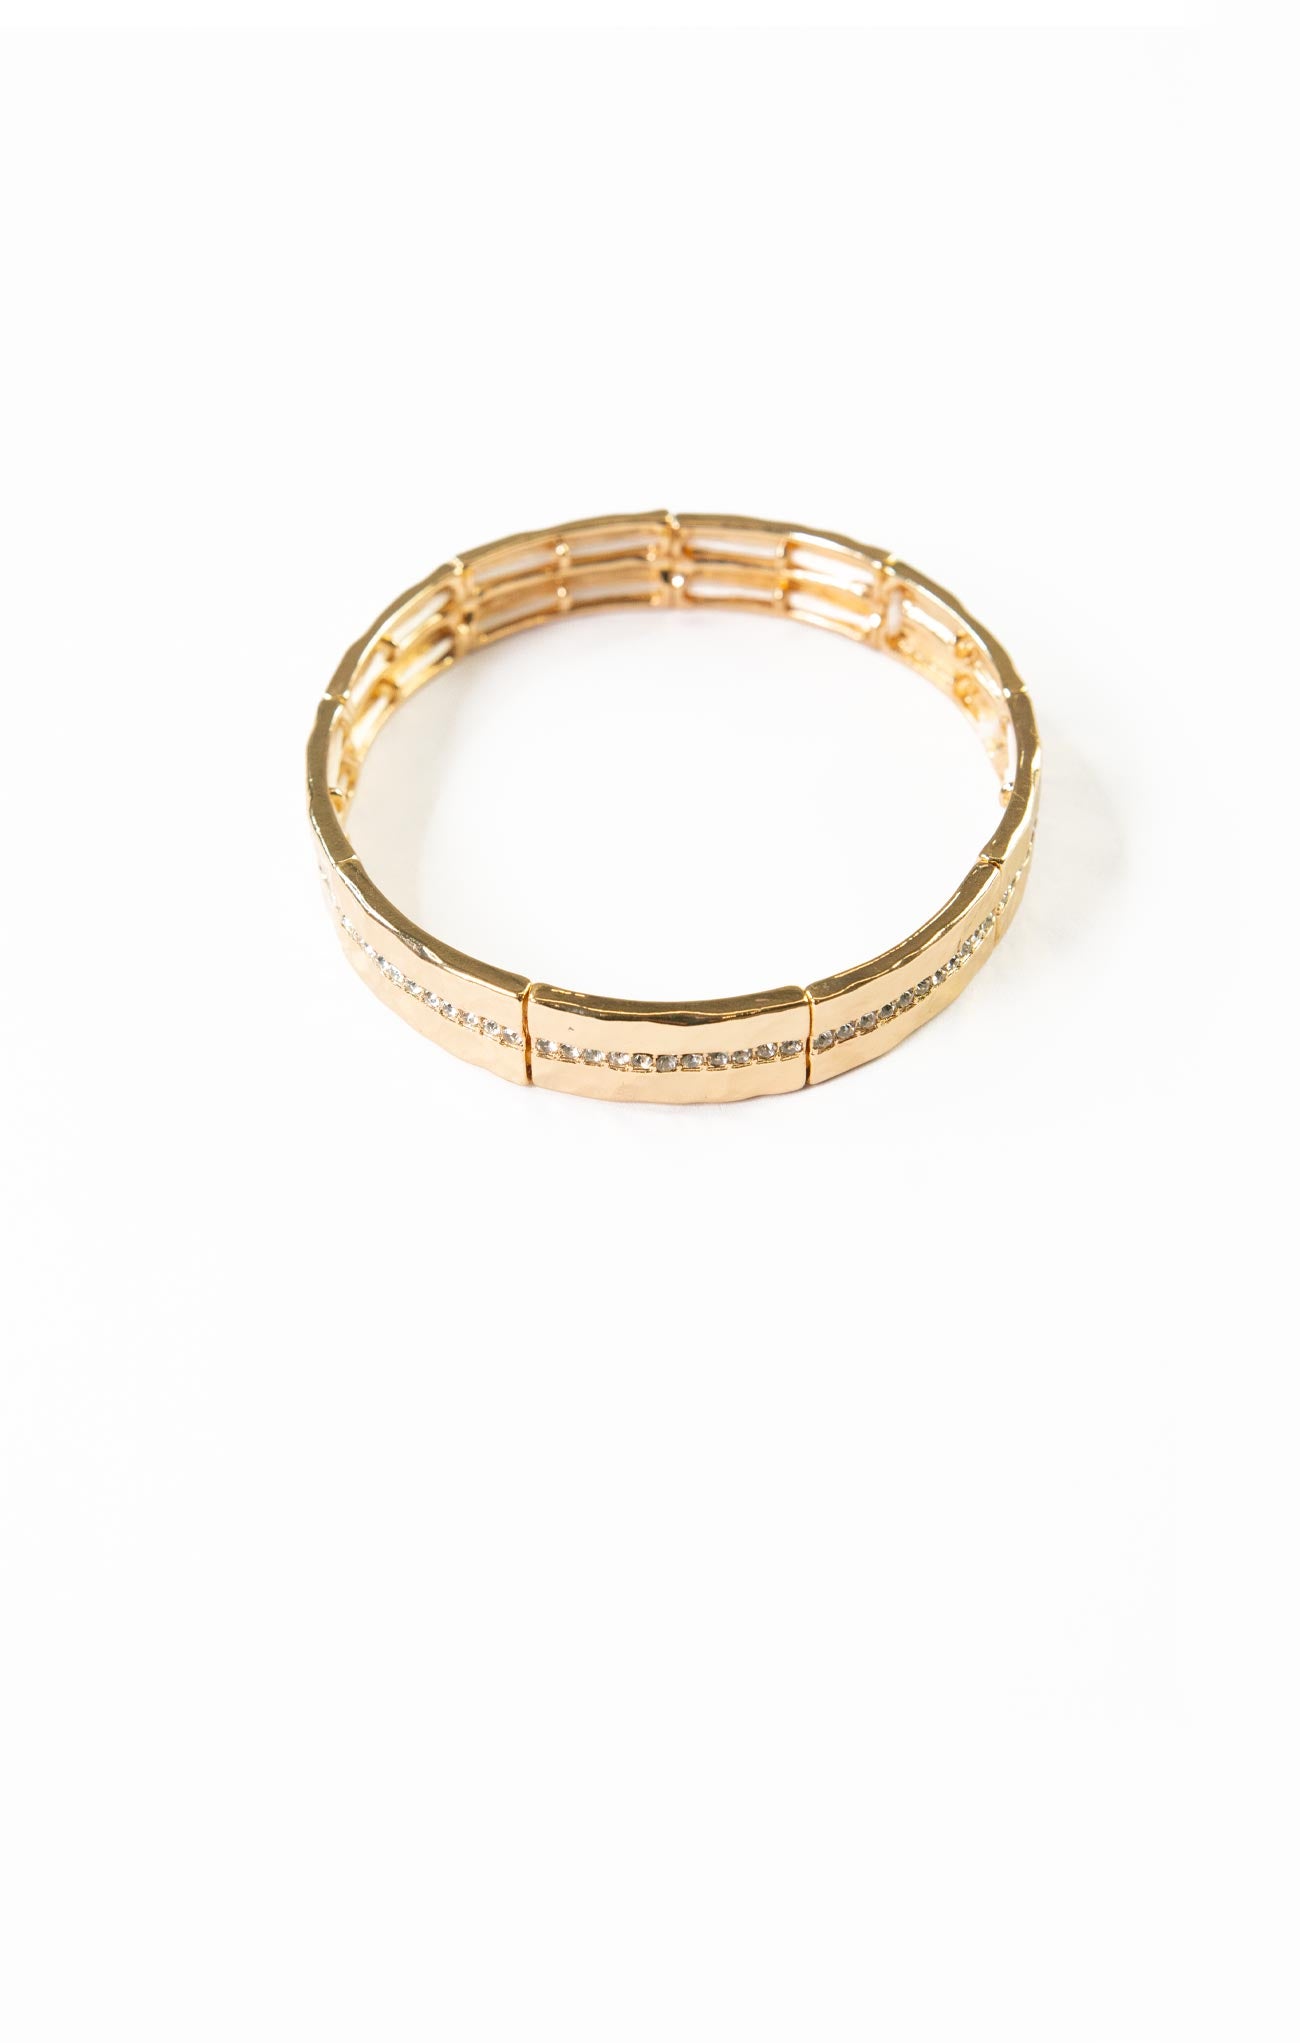 CRYSTAL LINE METAL STRETCH BRACELET-gold,silver,row of crystal details,hammered metal,stretch bracelet